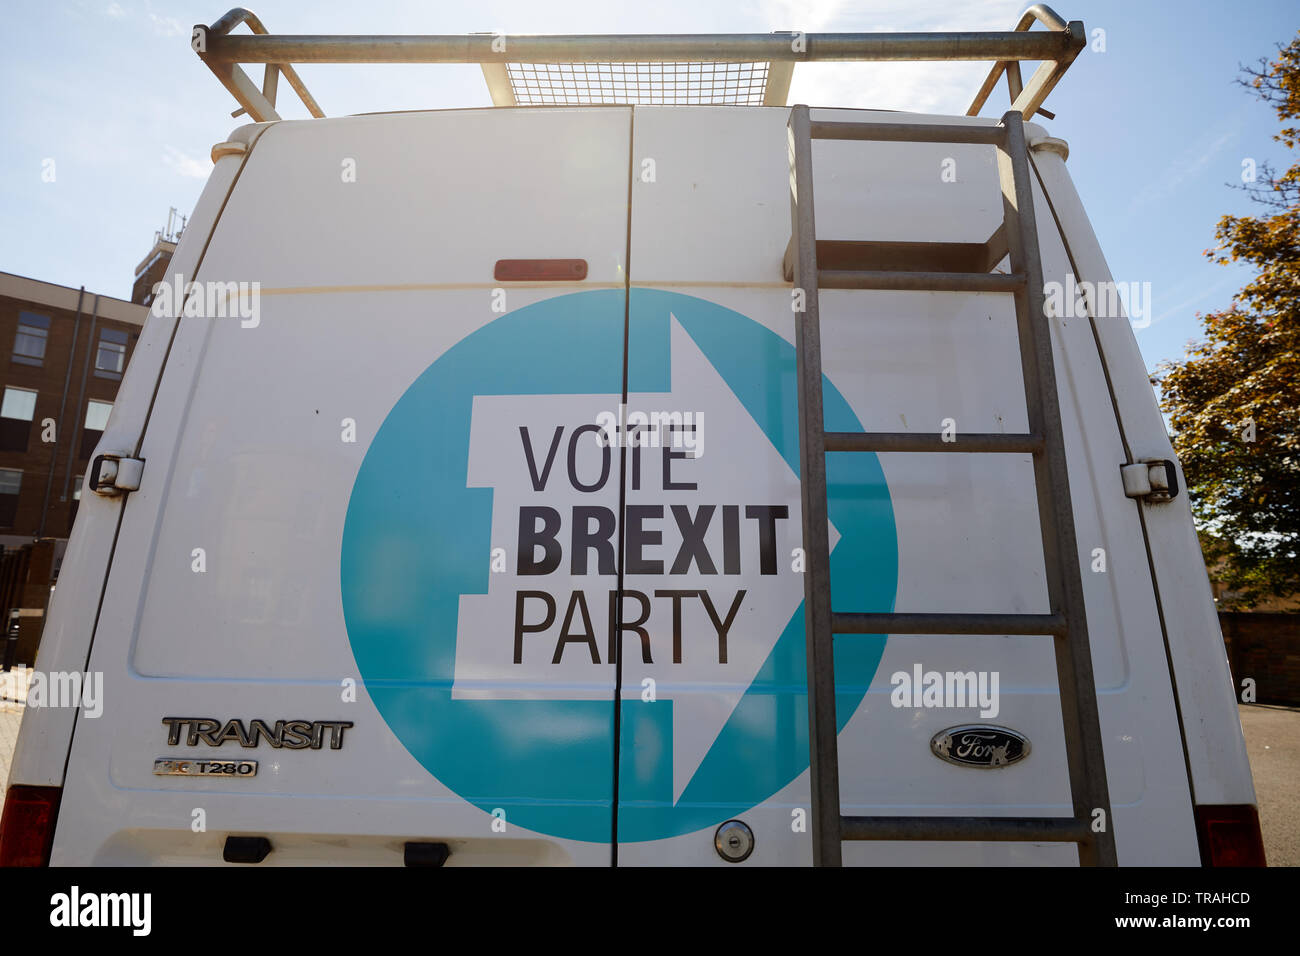 Peterborough, Reino Unido - 1 junio, 2019: Un tránsito Brexit van adornadas con un logotipo del partido durante la campaña electoral para la elección de Peterborough. Foto de stock